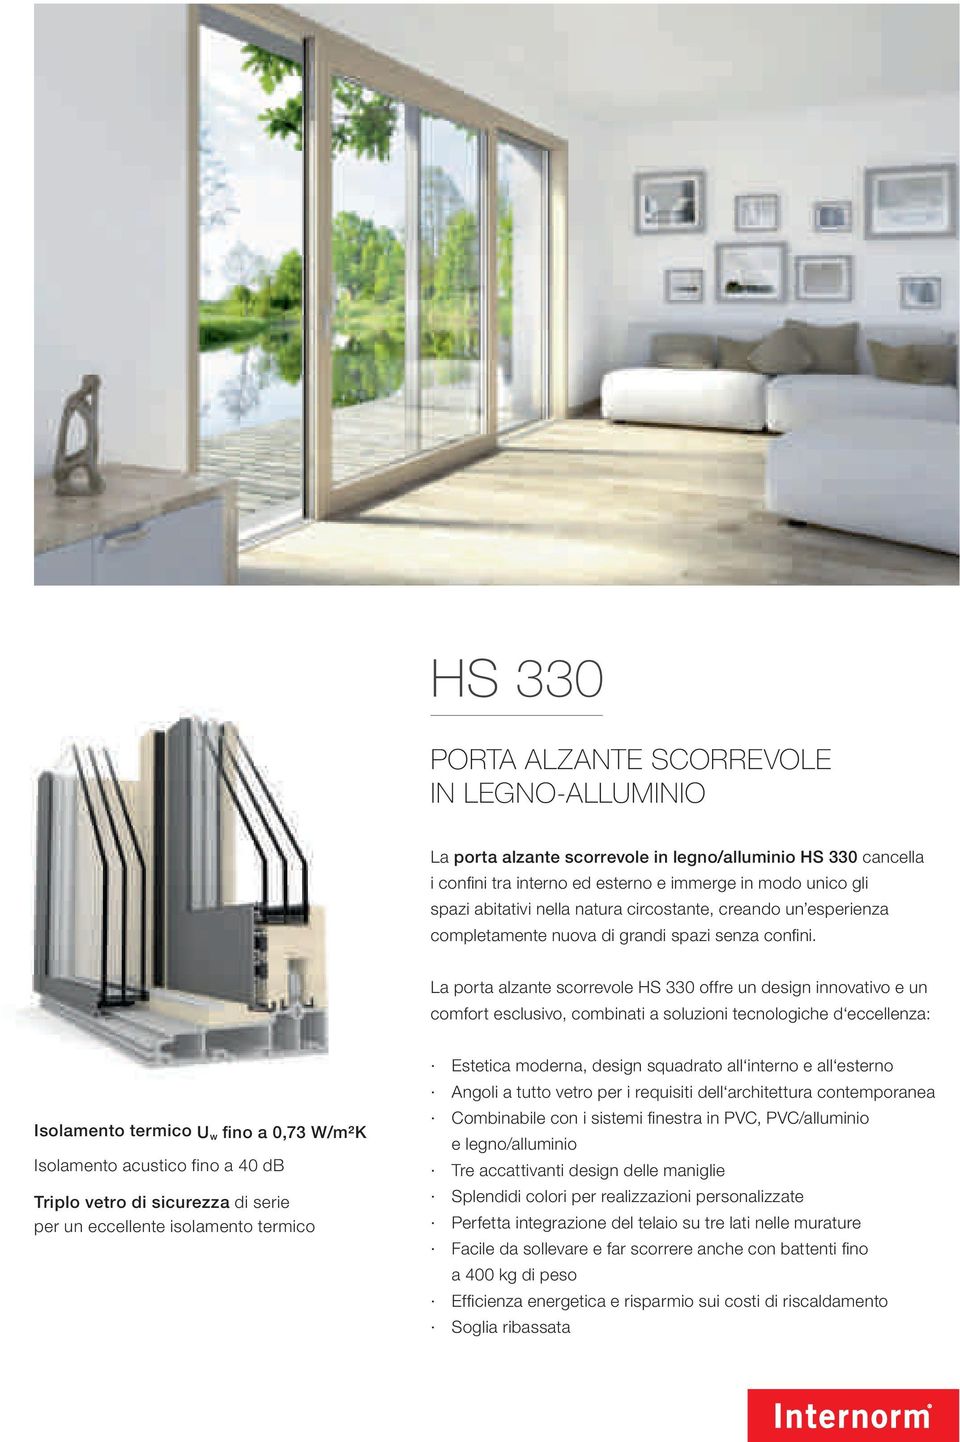 La porta alzante scorrevole HS 330 offre un design innovativo e un comfort esclusivo, combinati a soluzioni tecnologiche d eccellenza: Isolamento termico U w fino a 0,73 W/m²K Isolamento acustico